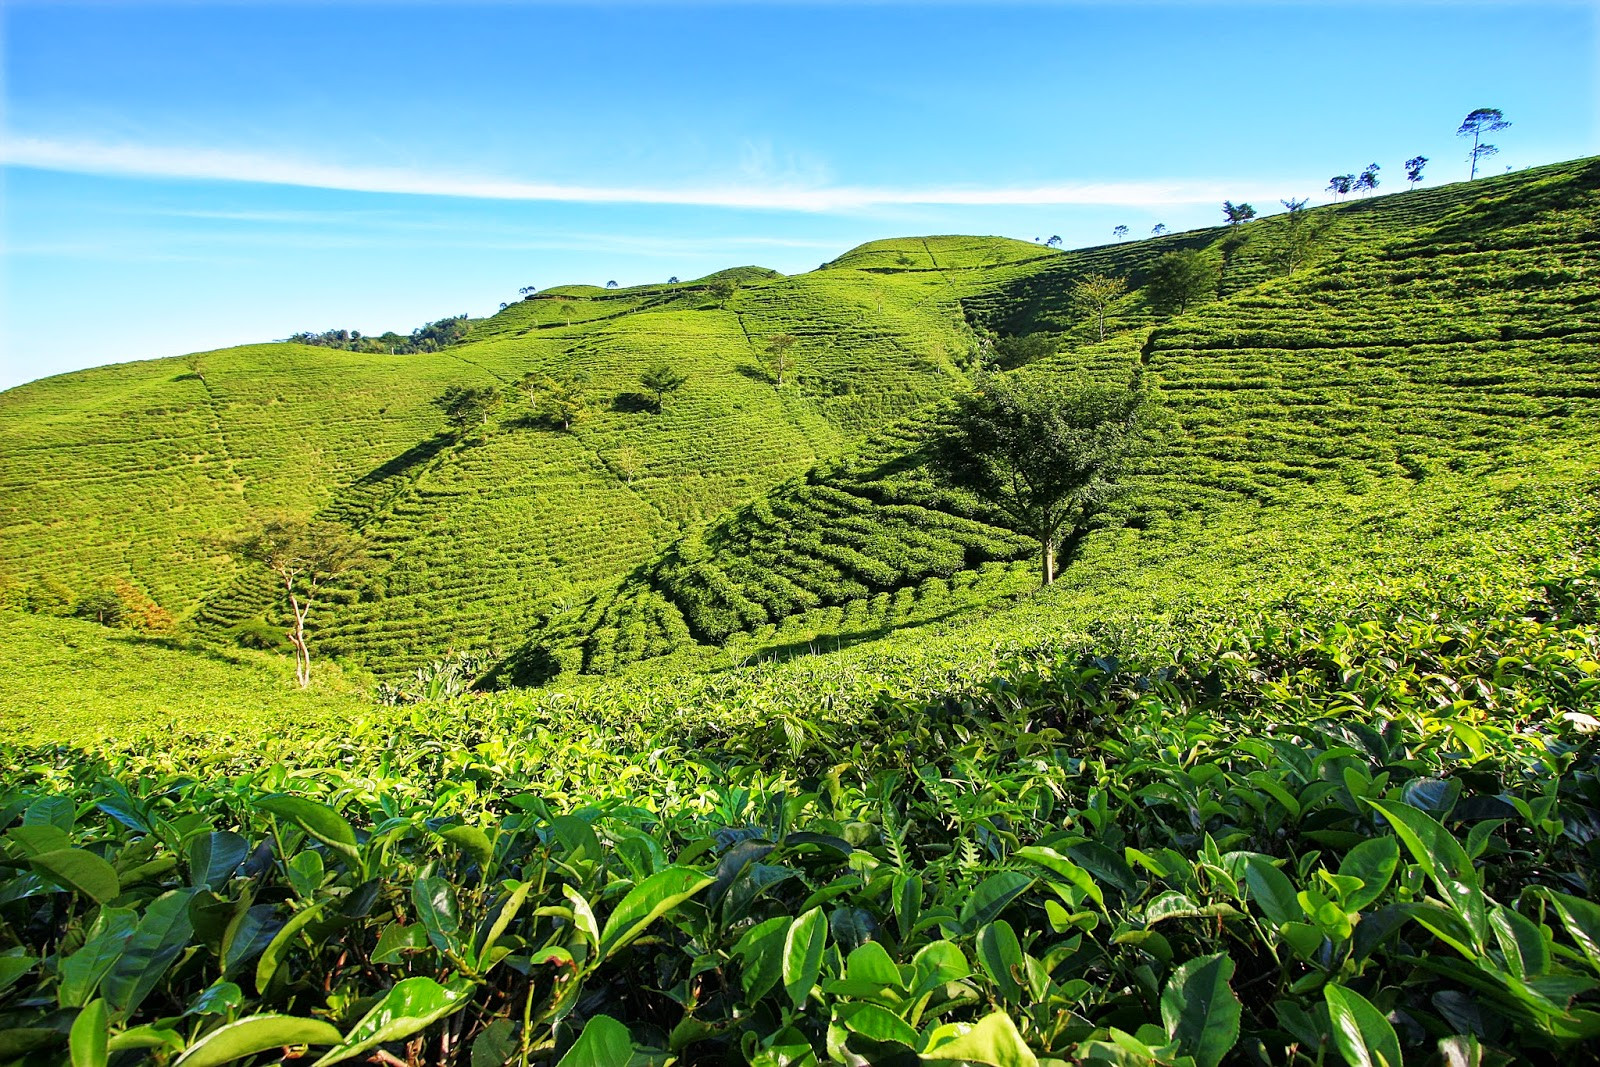 Suhu yang baik untuk pertumbuhan tanaman teh adalah